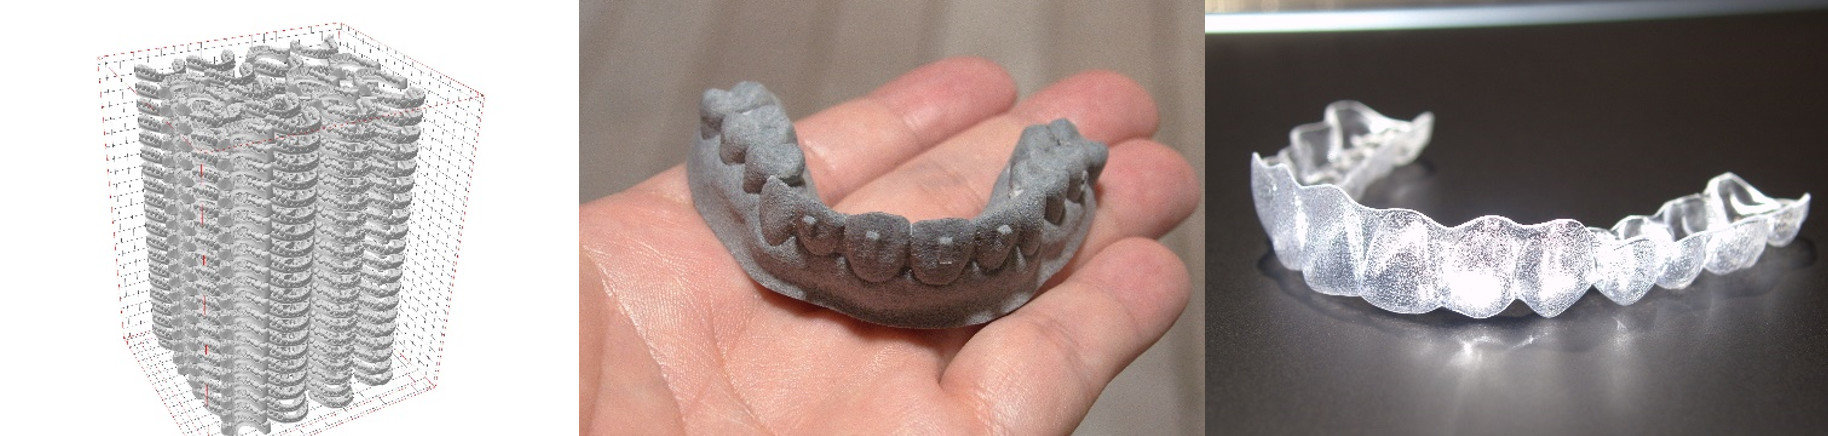 ヤマト運輸とDRIPSがマウスピースによる歯科矯正に革新、3Dプリンタ活用で